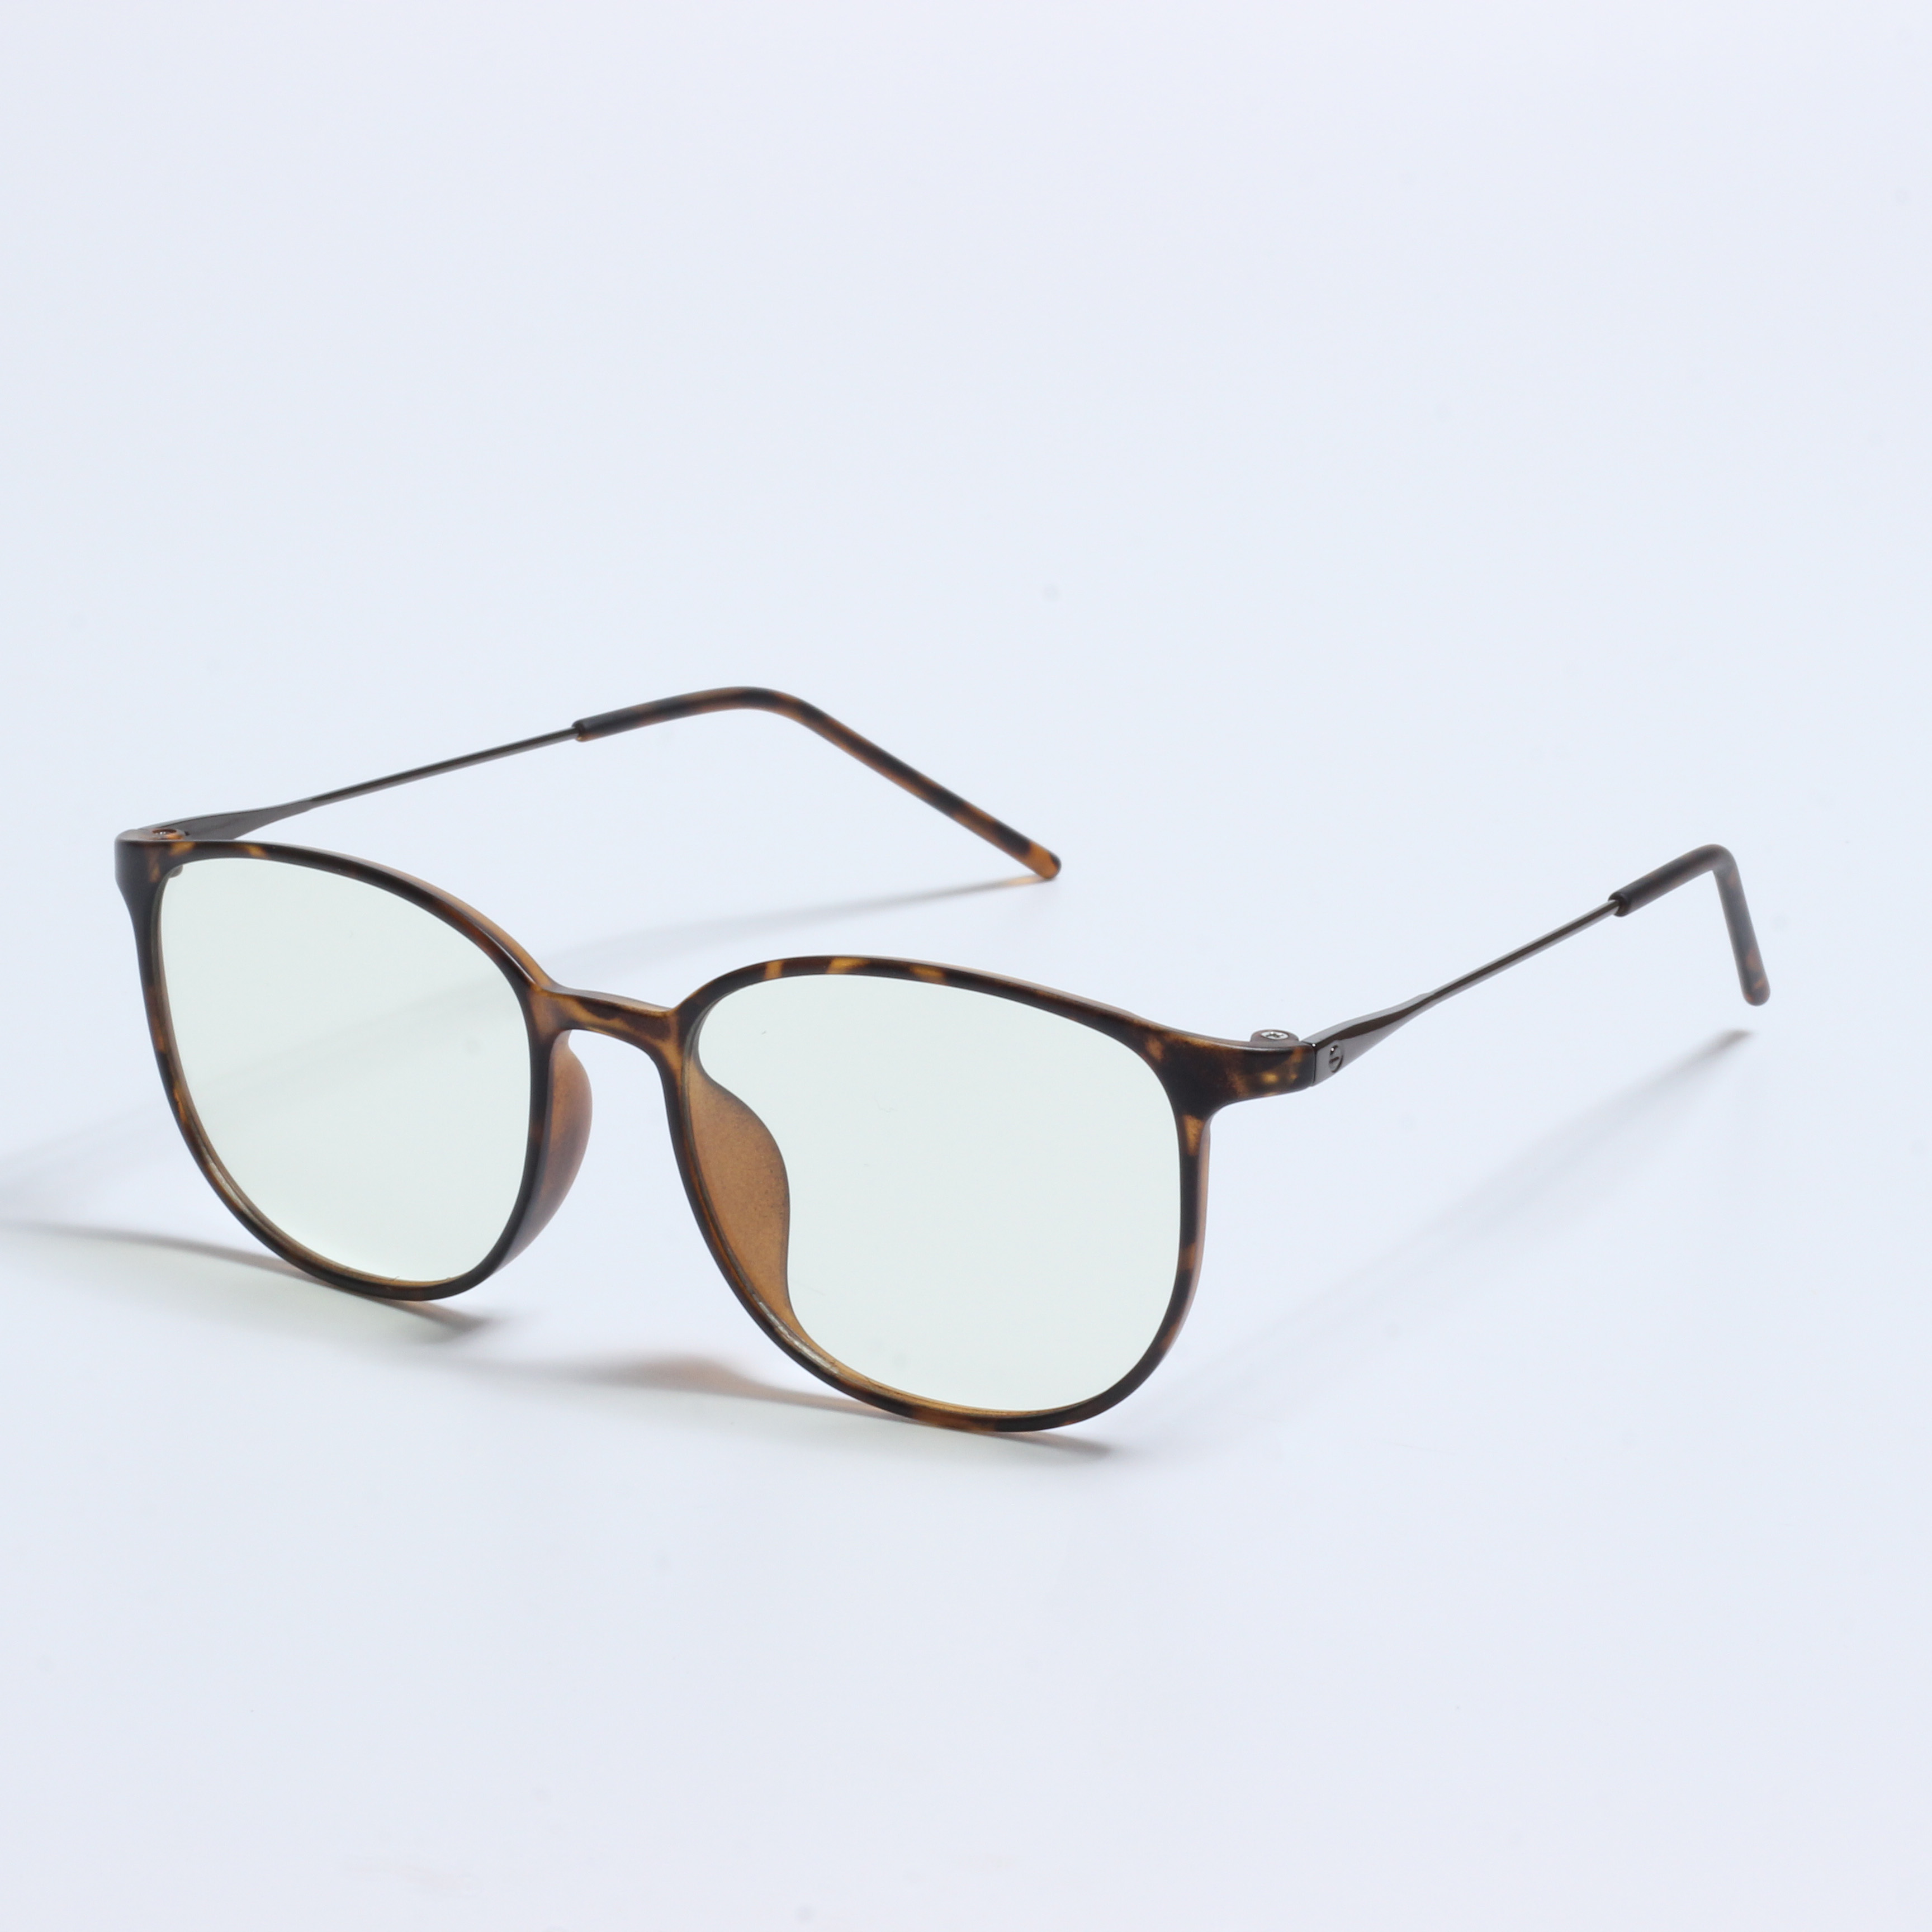 Veleprodaja okvira za naočale TR optički okviri (8)